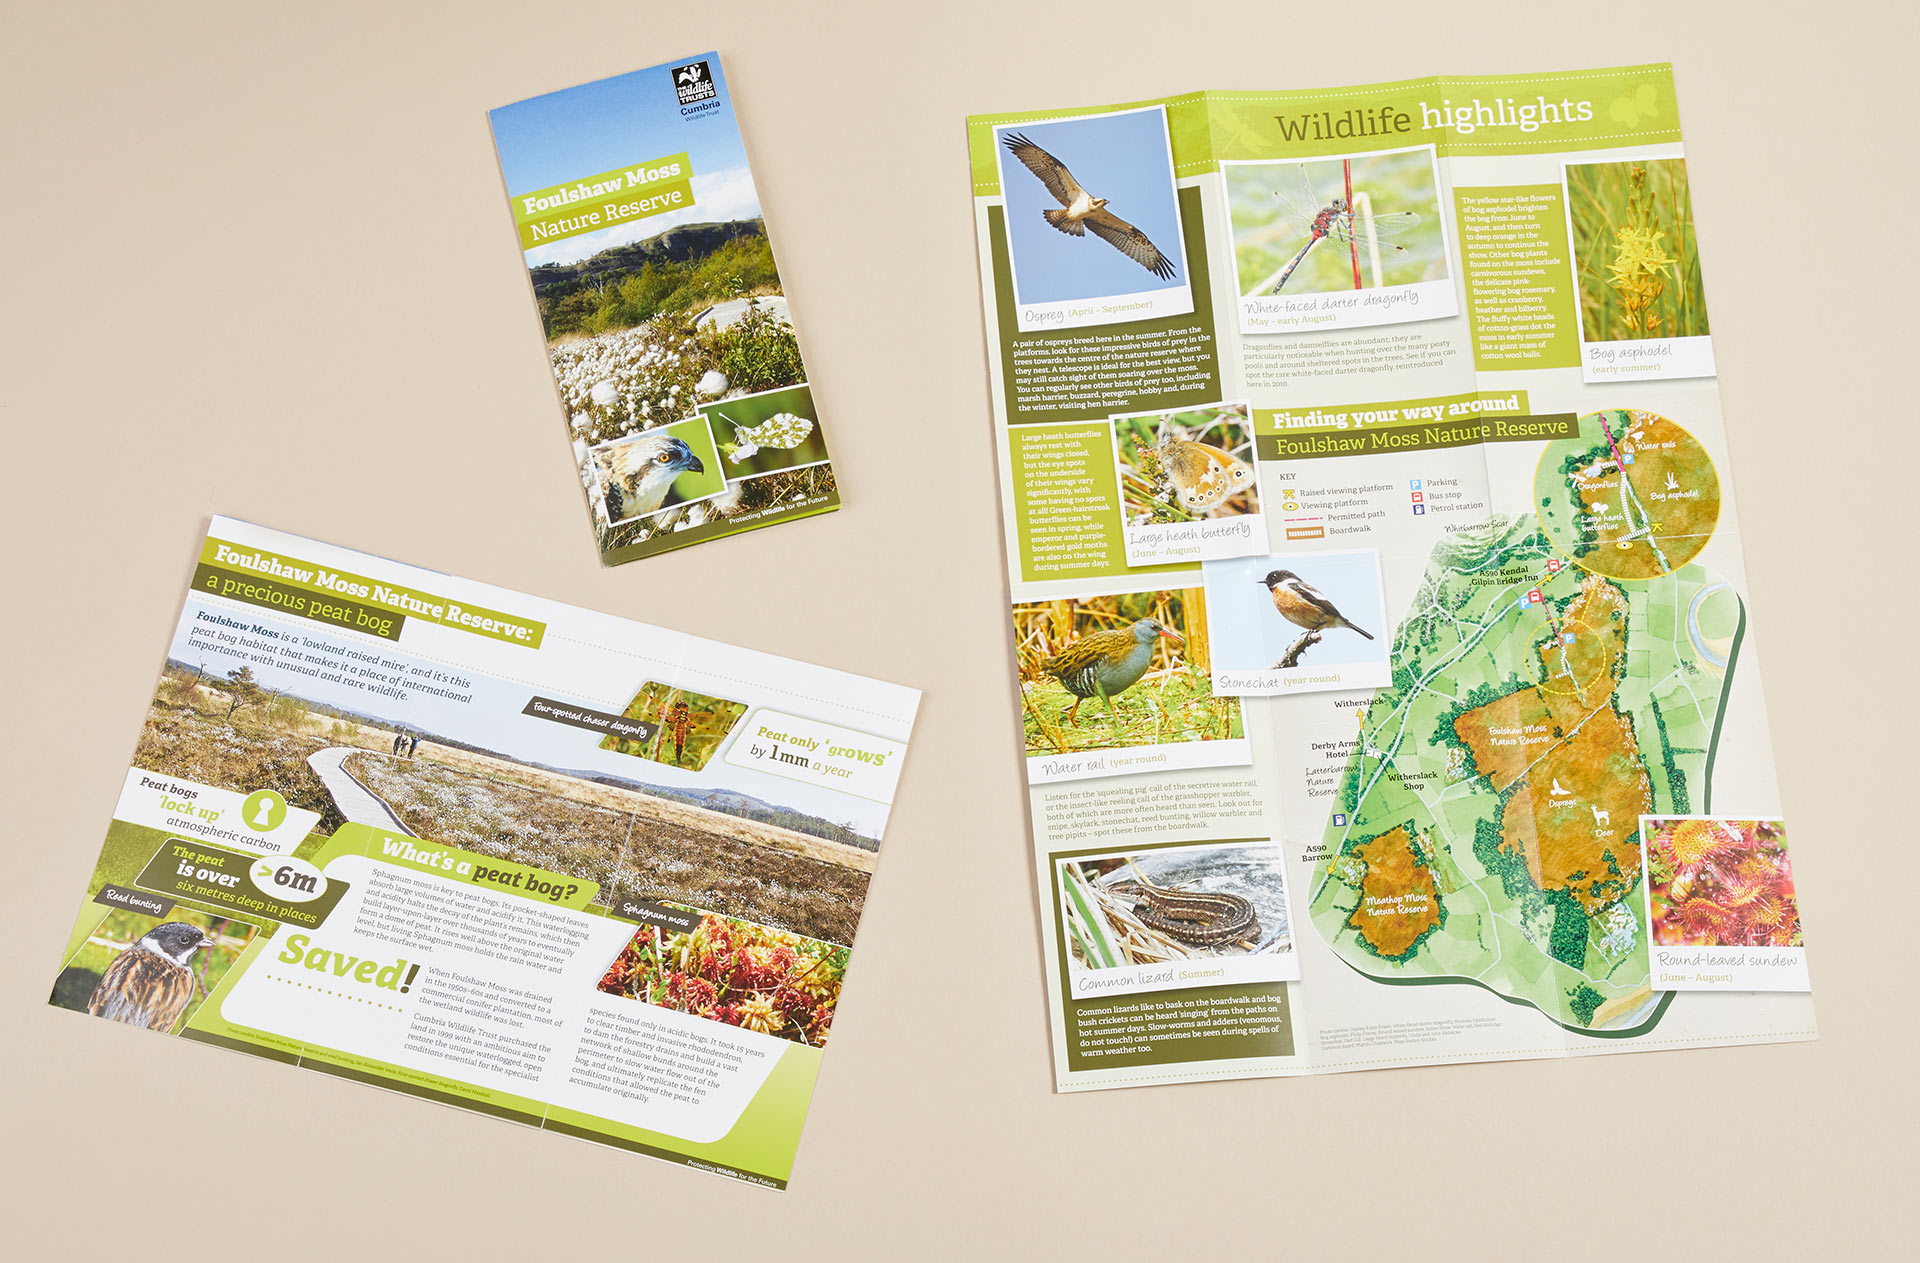 Nature reserve leaflets